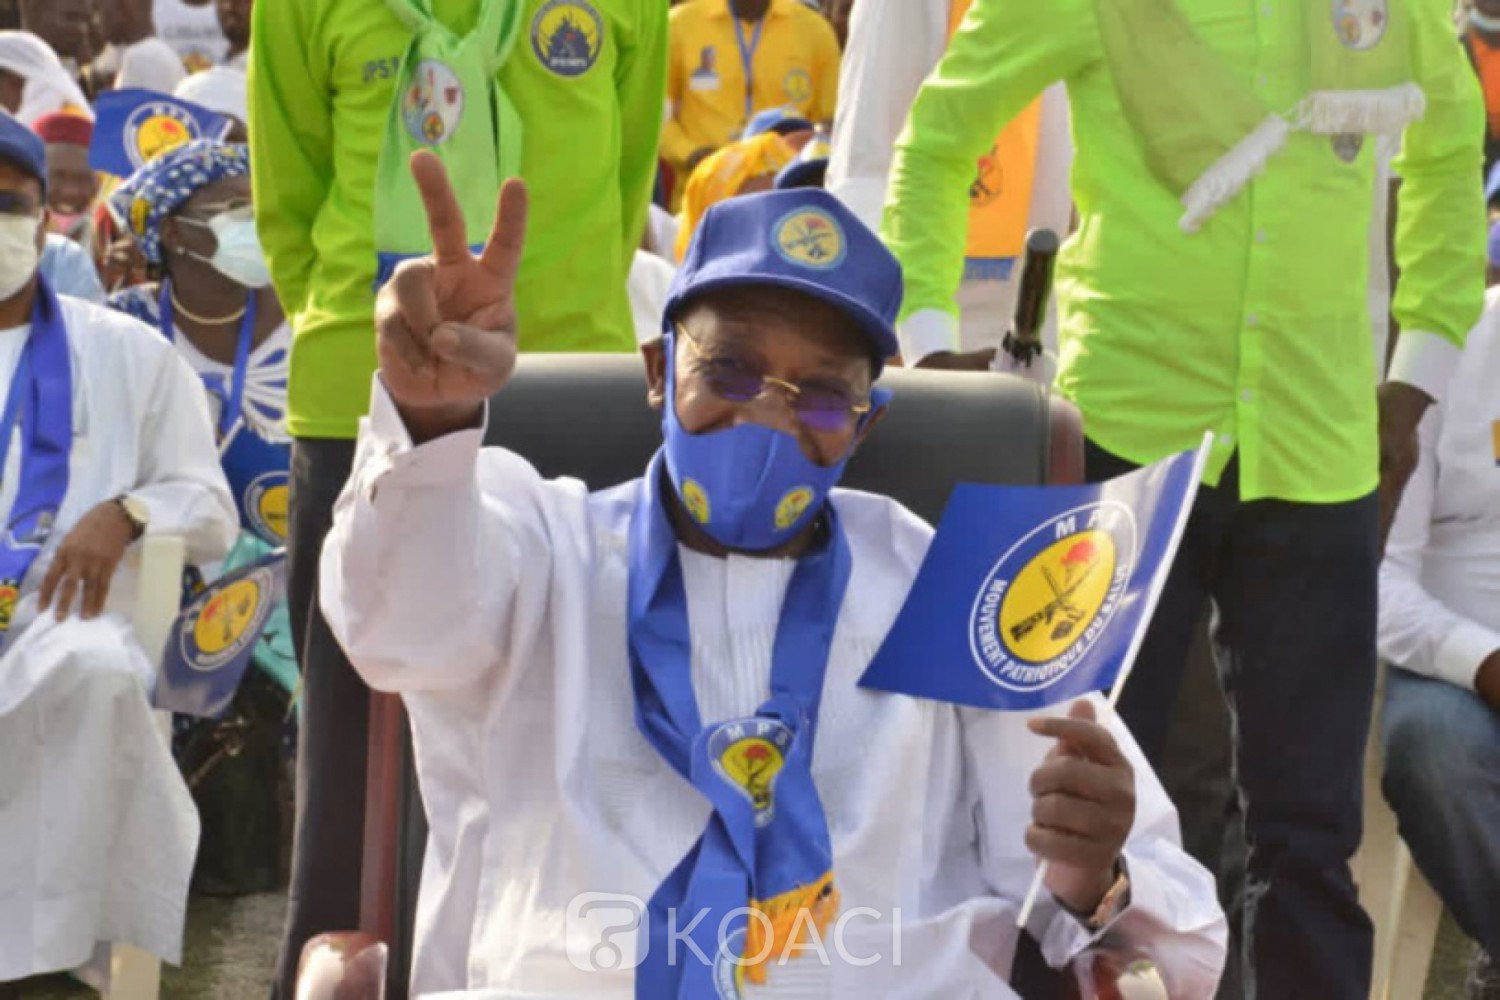 Tchad : En meeting, Idriss Déby après le retrait de plusieurs candidats :« Ils ont eu peur dès le départ »